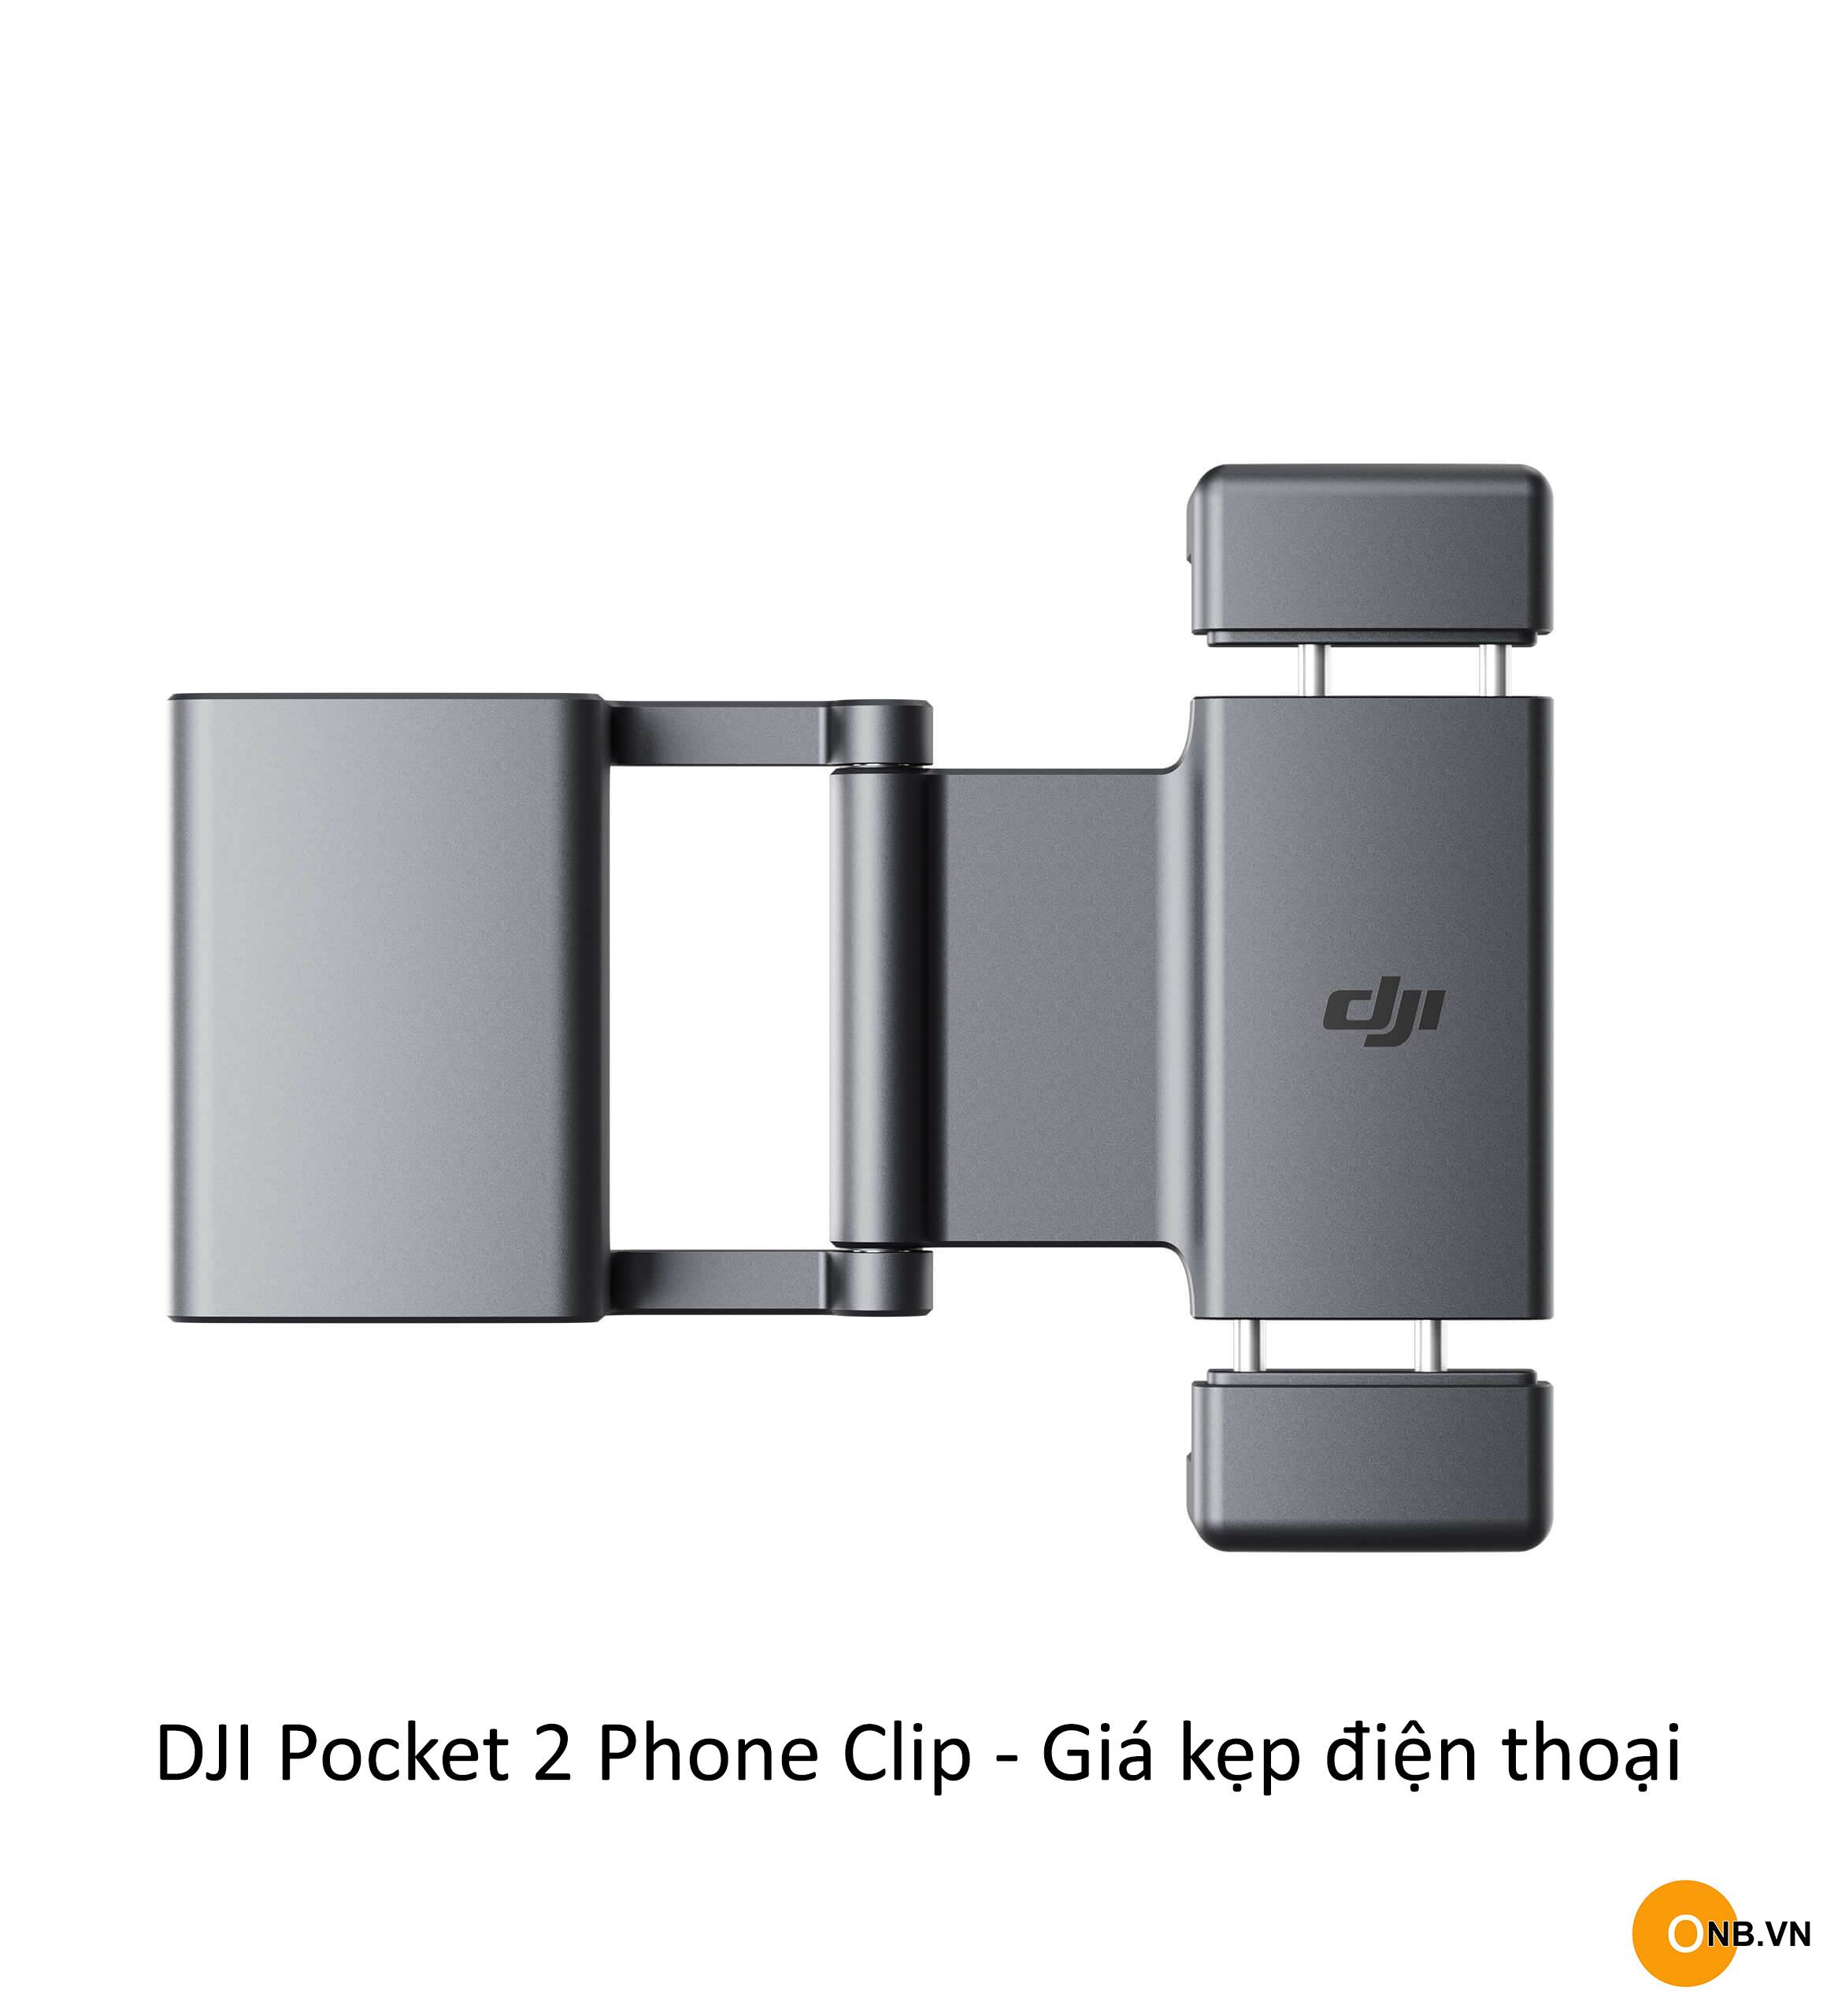 DJI Pocket 2 Phone Clip - Giá kẹp điện thoại và Pocket 2